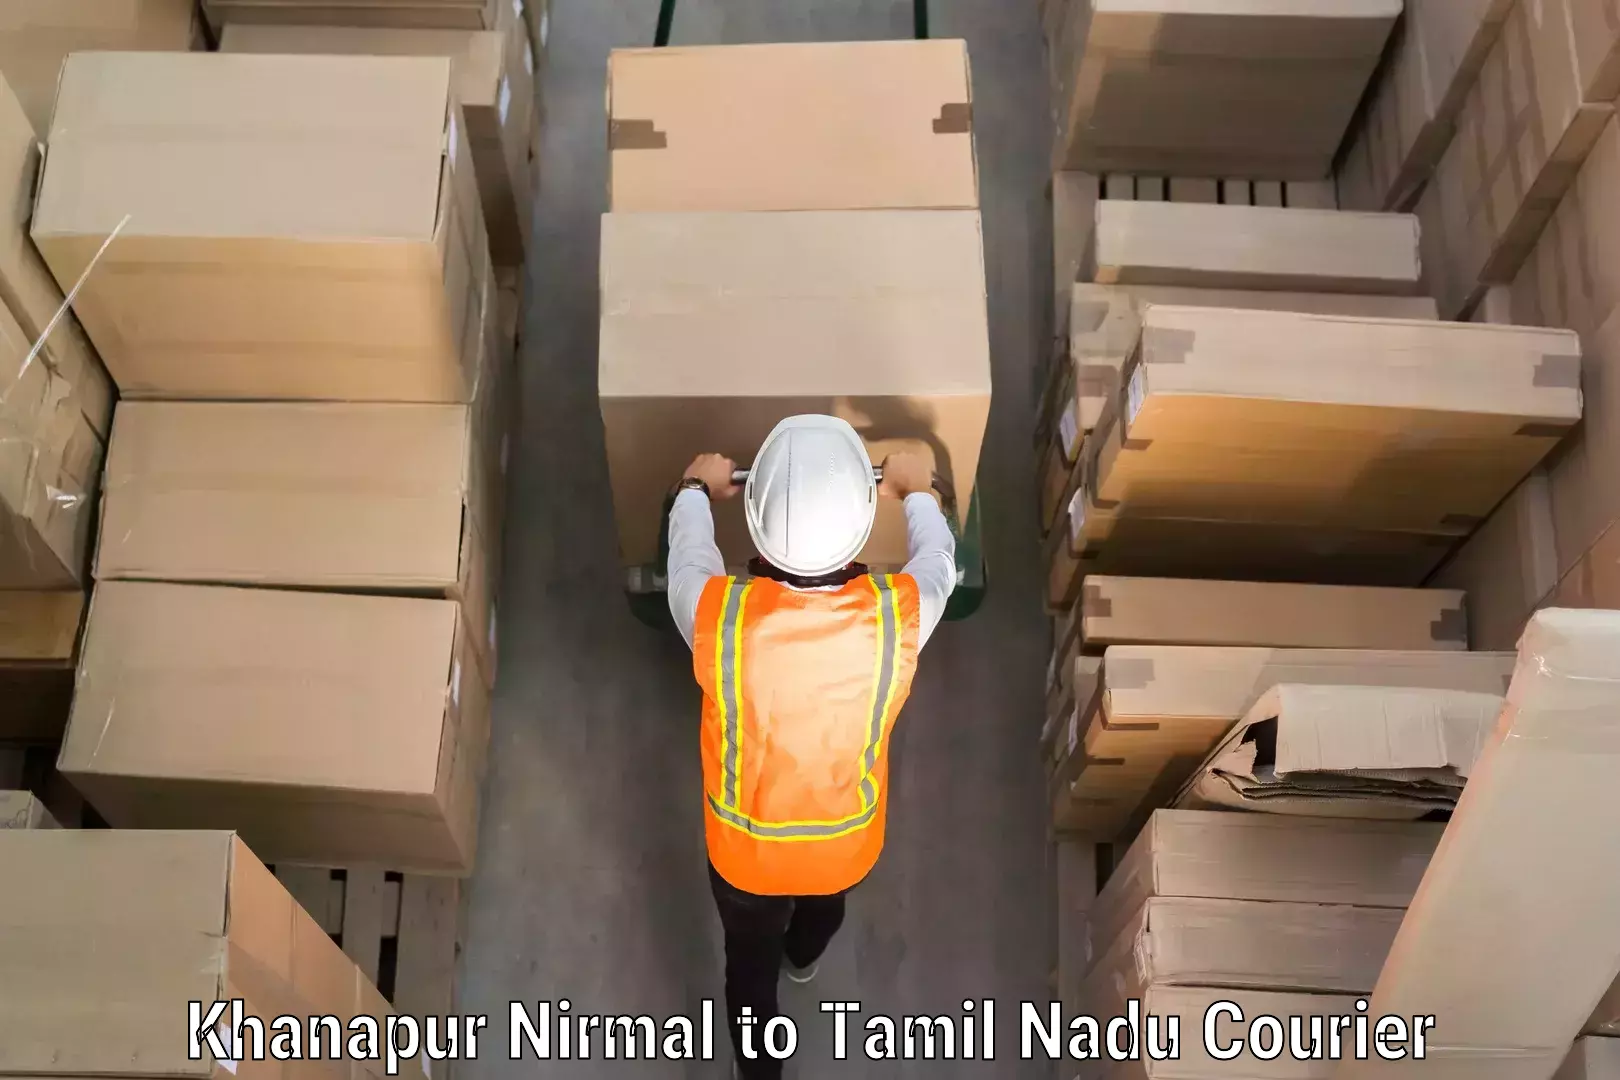 Personalized luggage shipping Khanapur Nirmal to Surandai